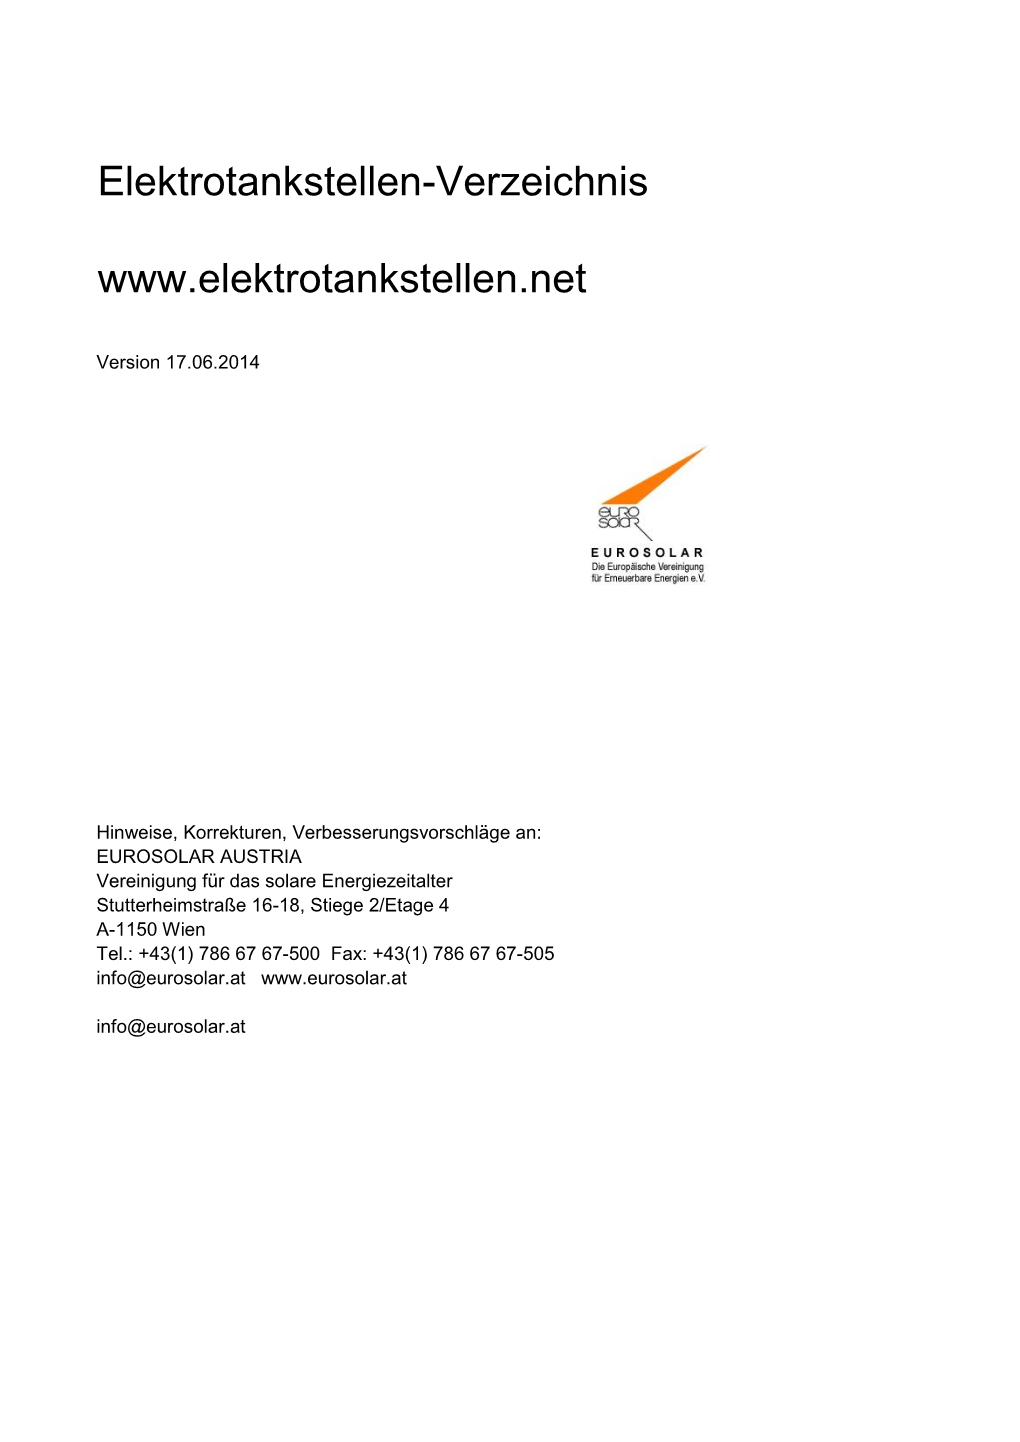 [PDF] Elektrotankstellen-Verzeichnis